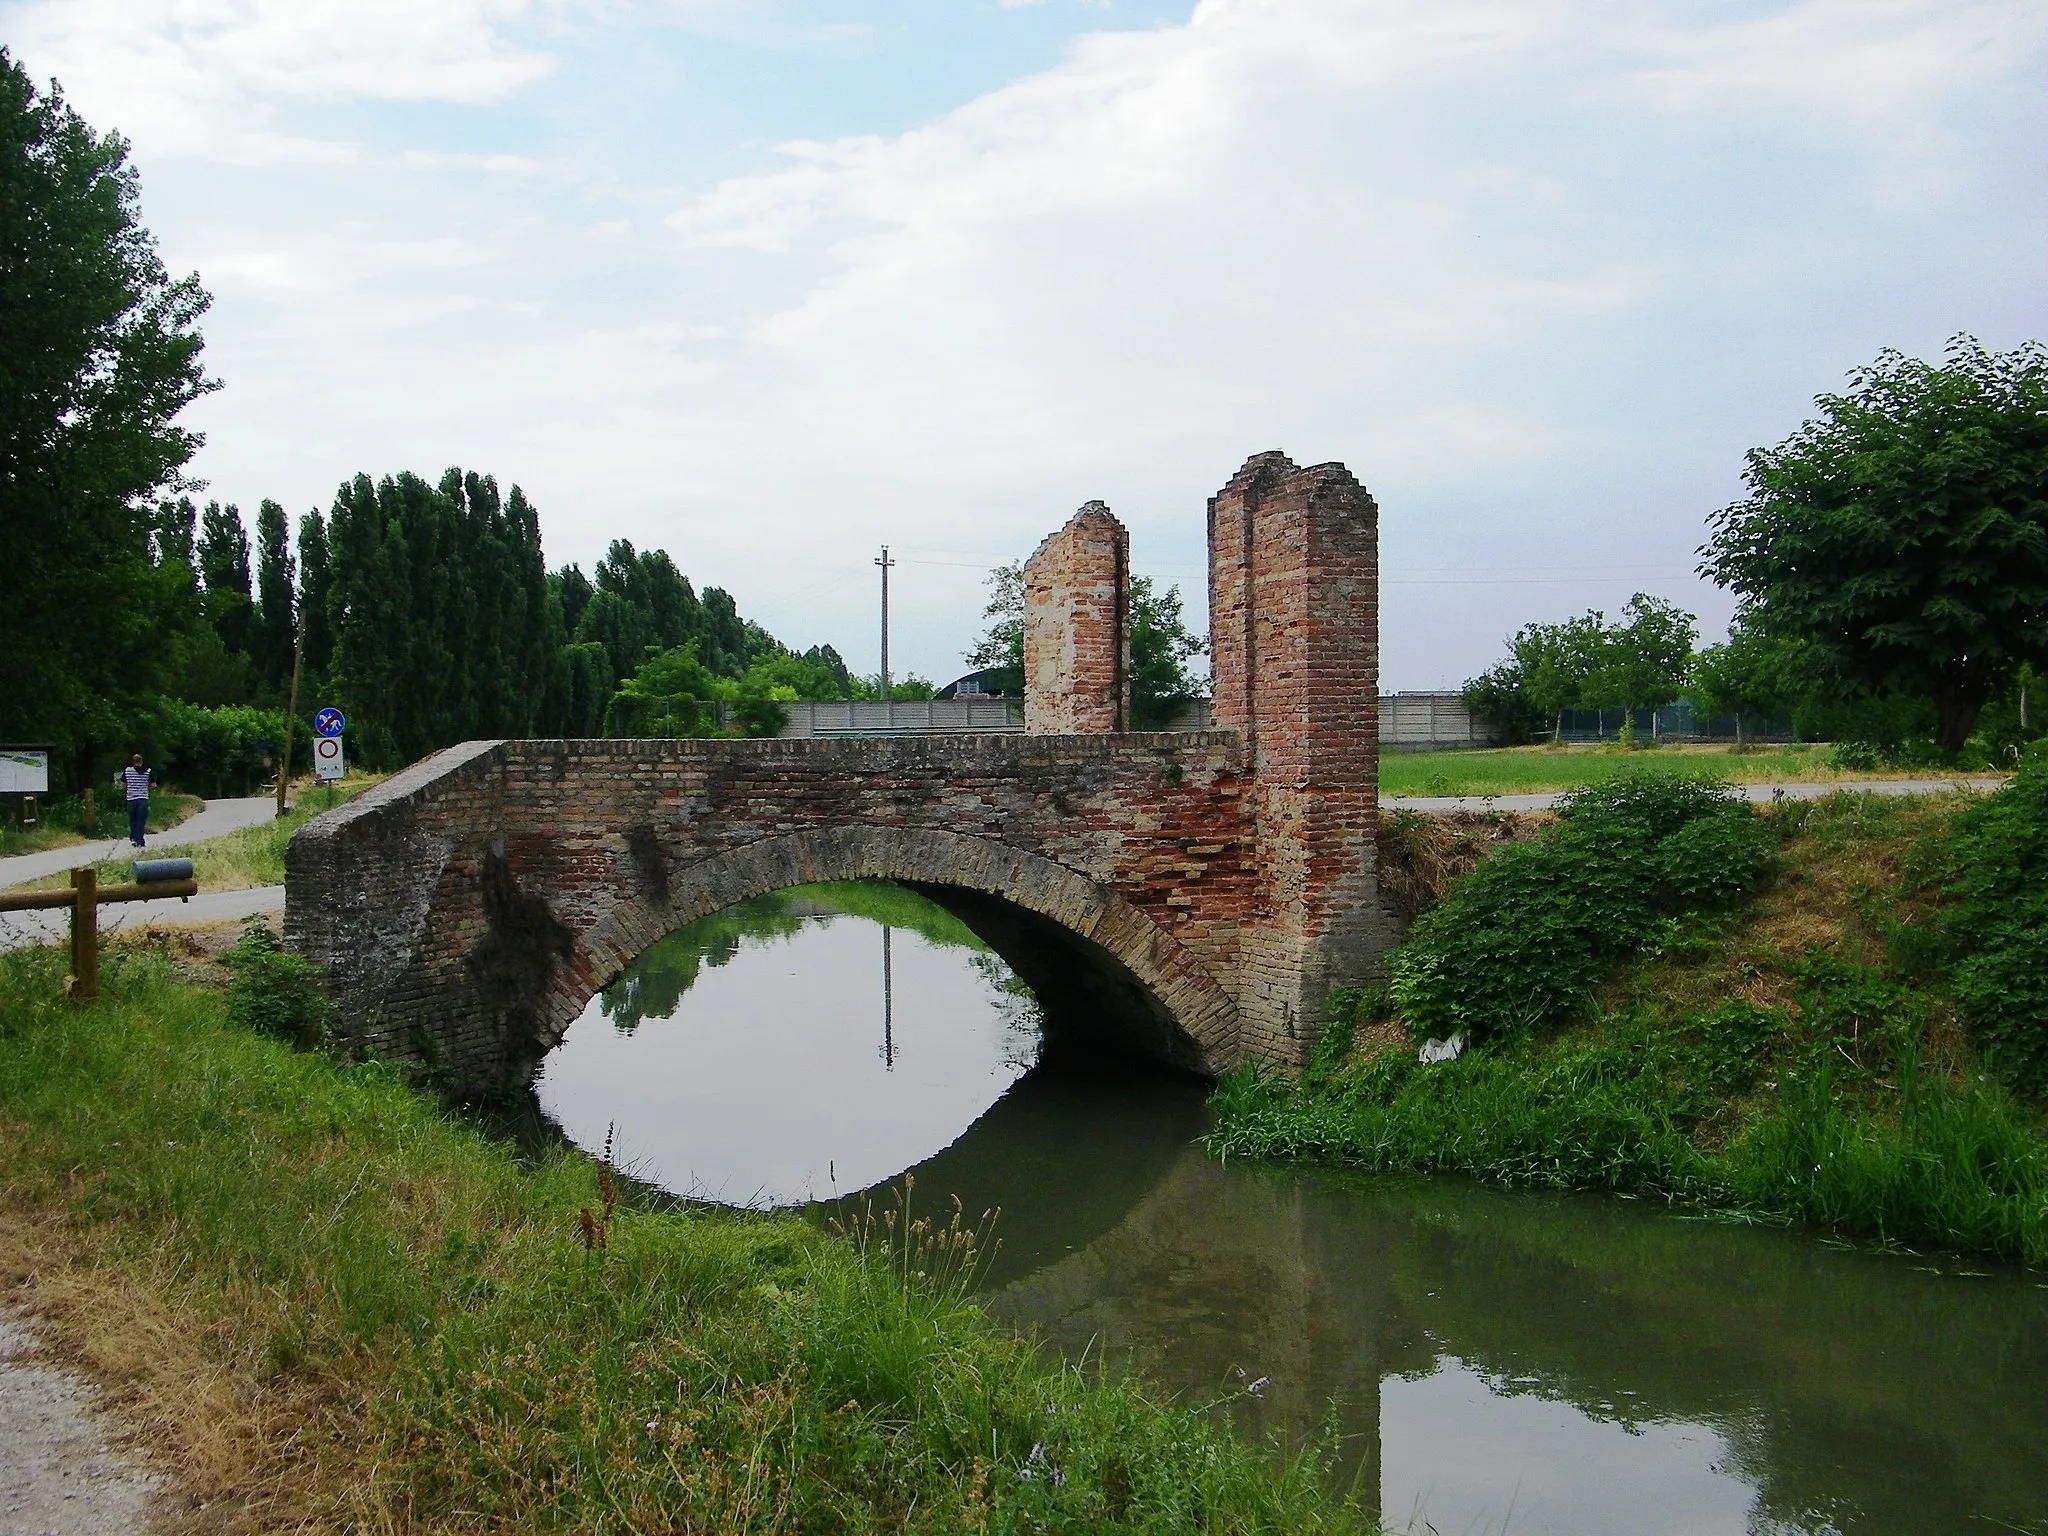 Billede af Veneto